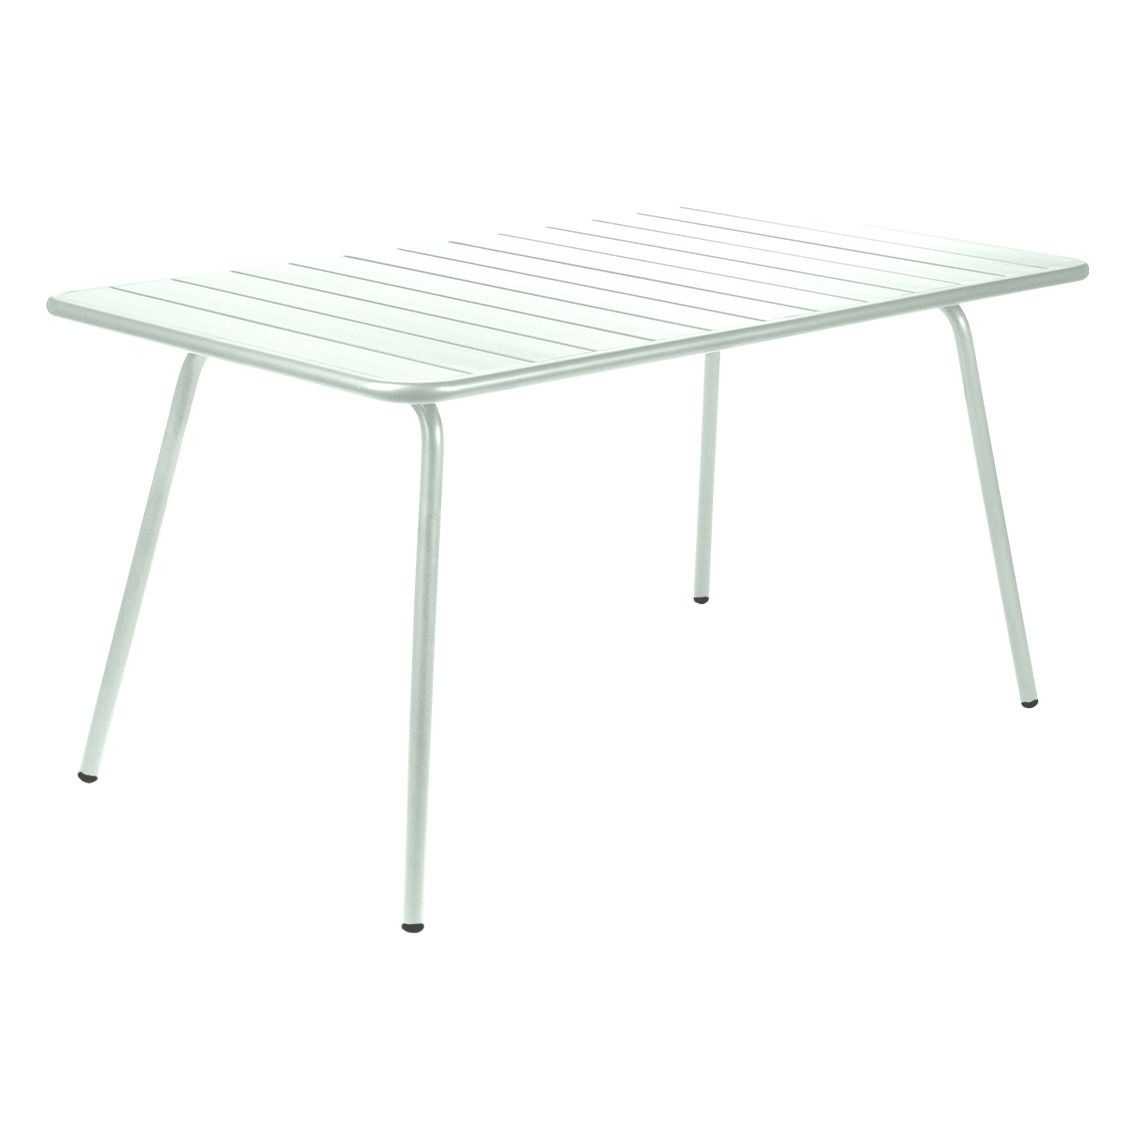 Fermob - Table Luxembourg en aluminium - 143x80 cm - Menthe glaciale